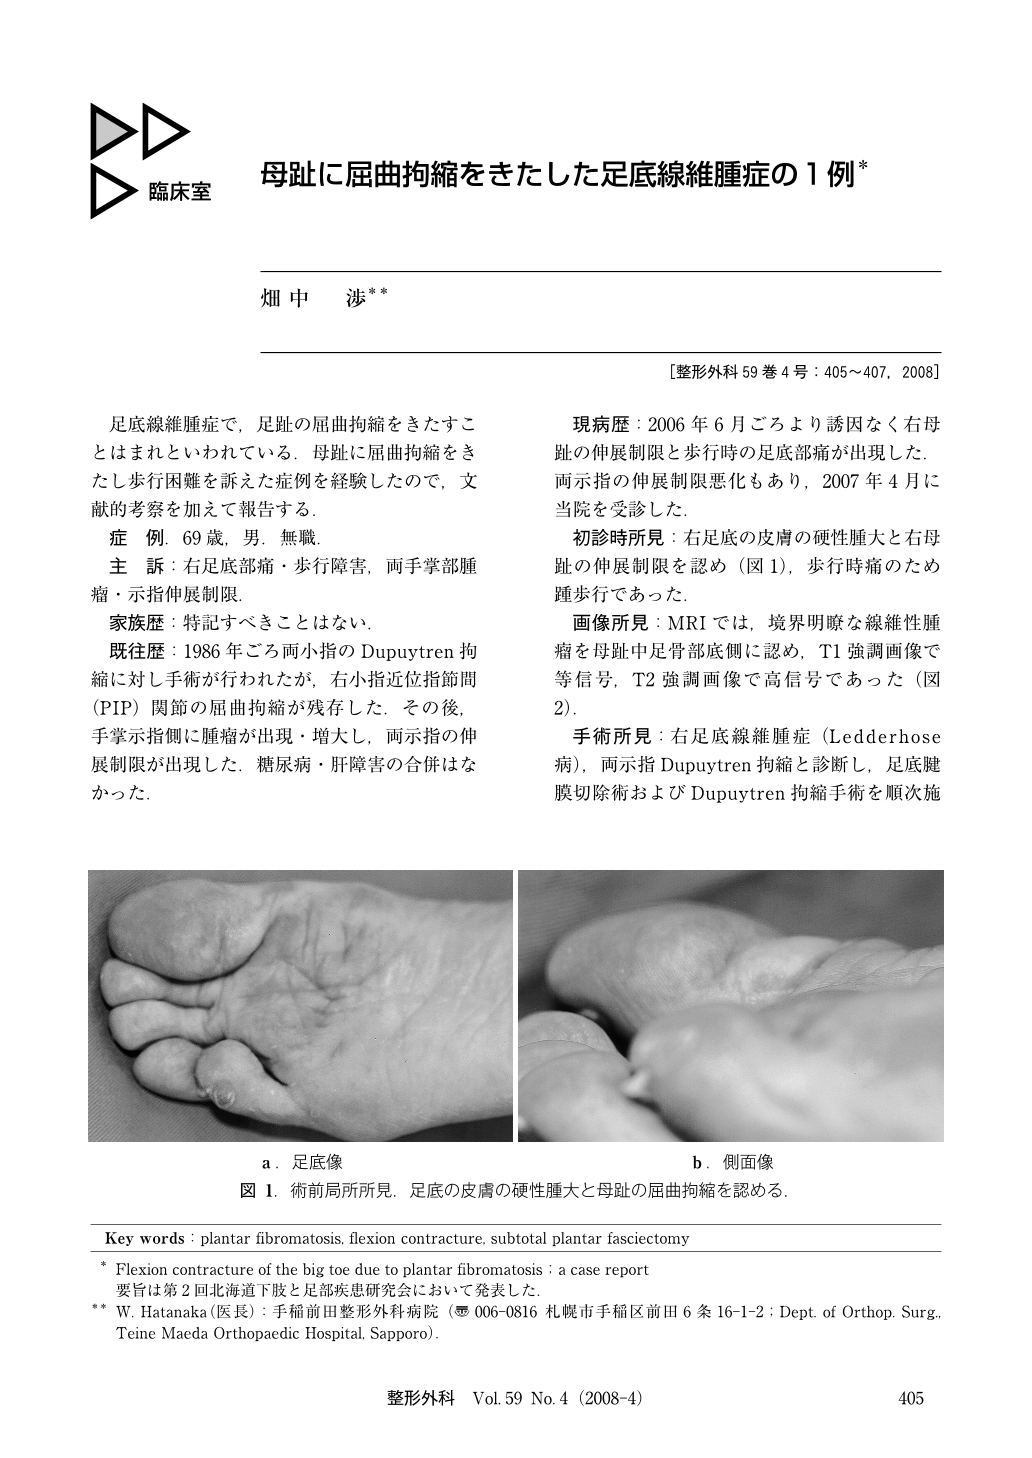 母趾に屈曲拘縮をきたした足底線維腫症の1例 臨床雑誌整形外科 59巻4号 医書 Jp